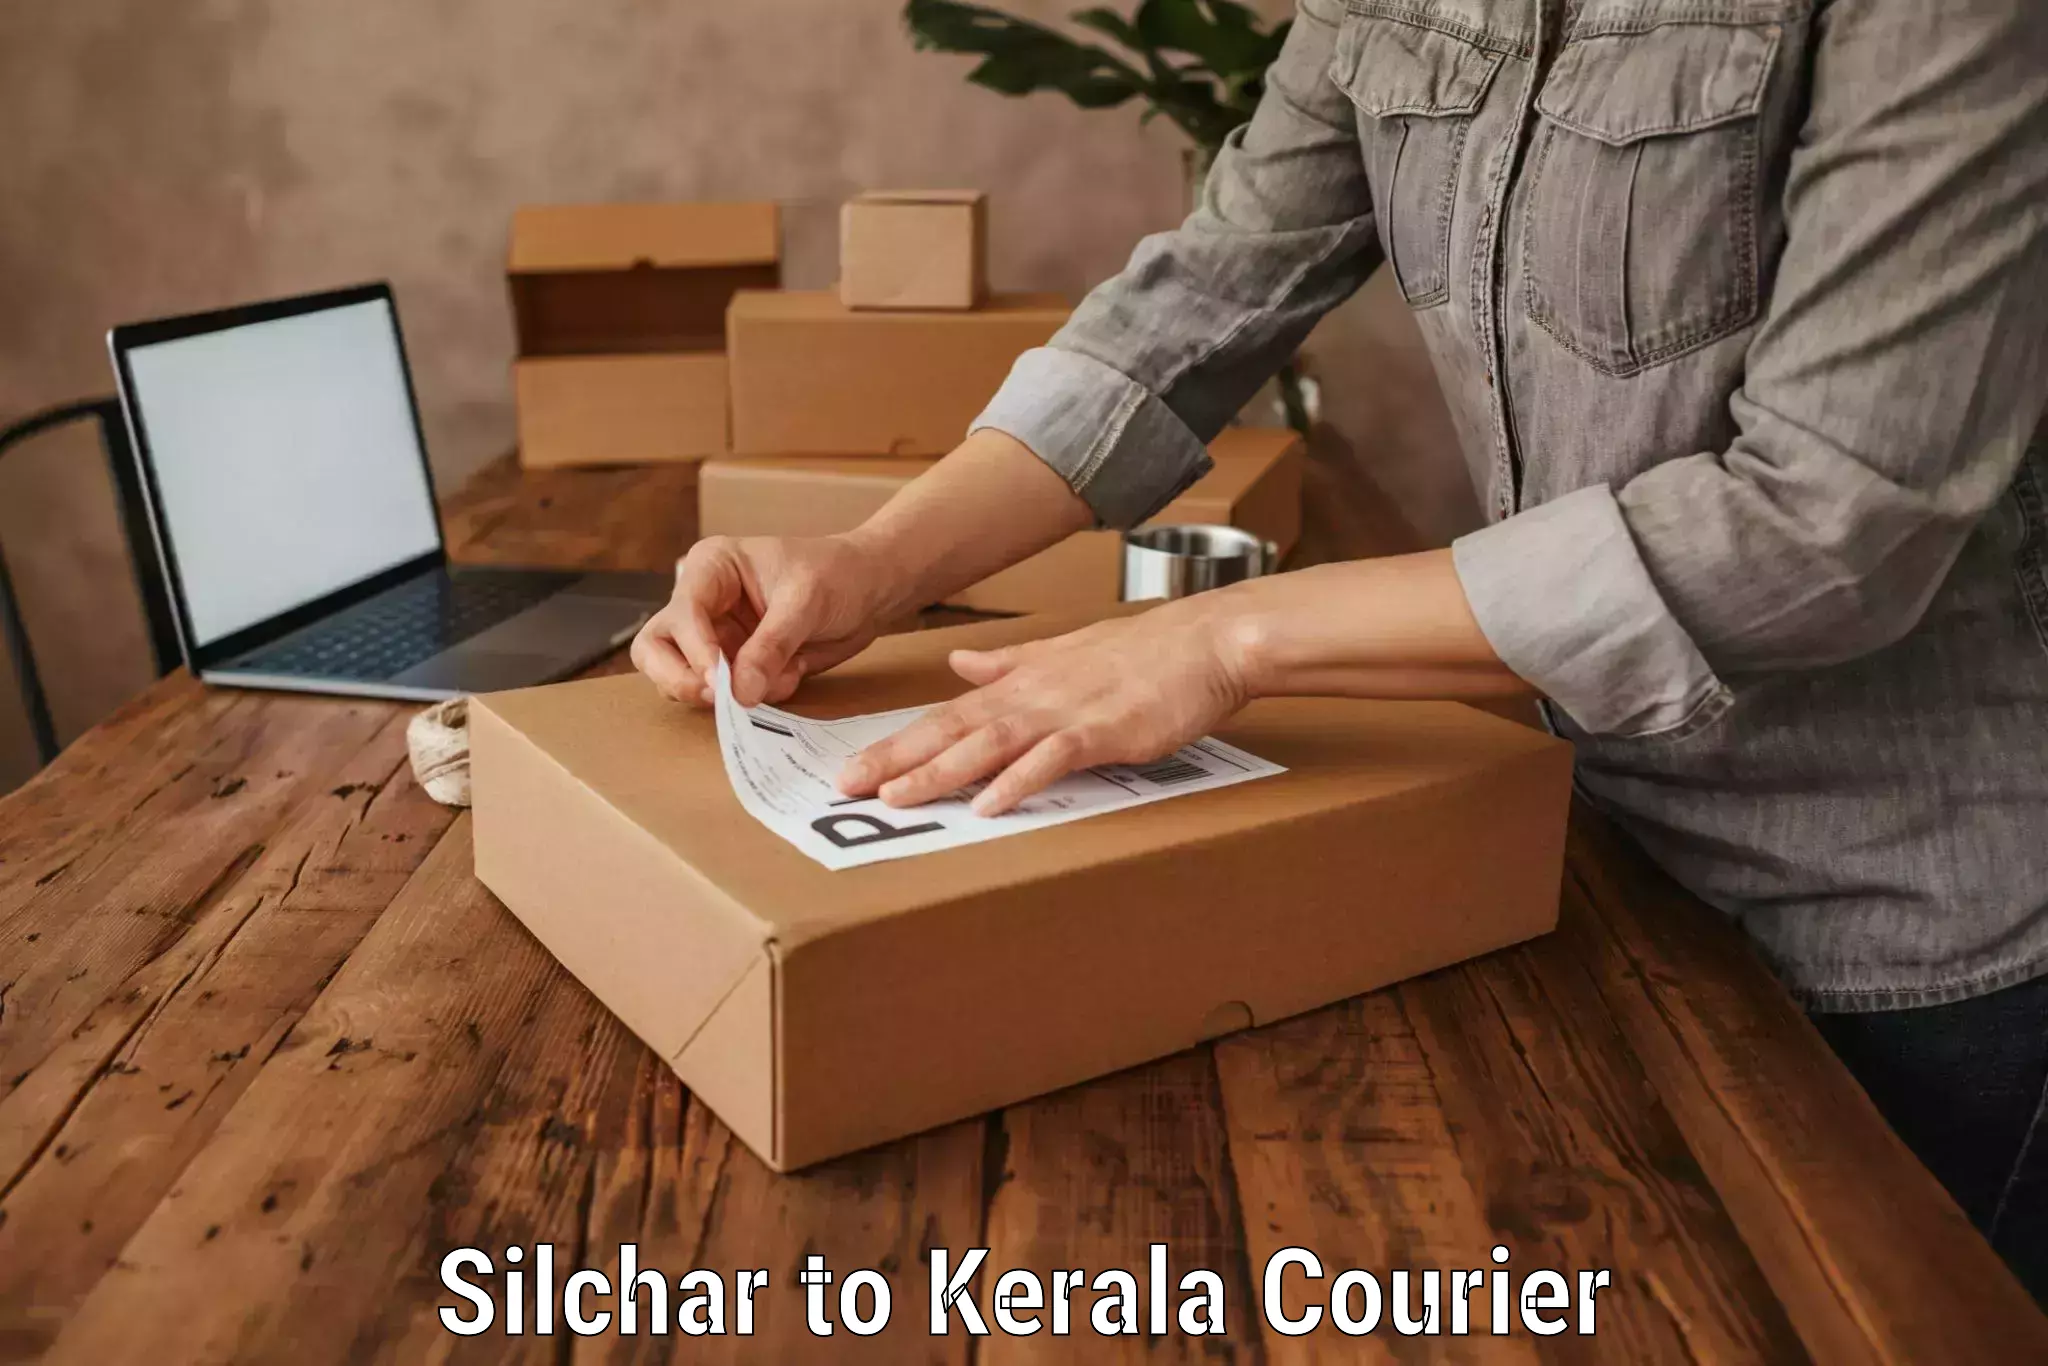 Luggage transit service Silchar to Kerala